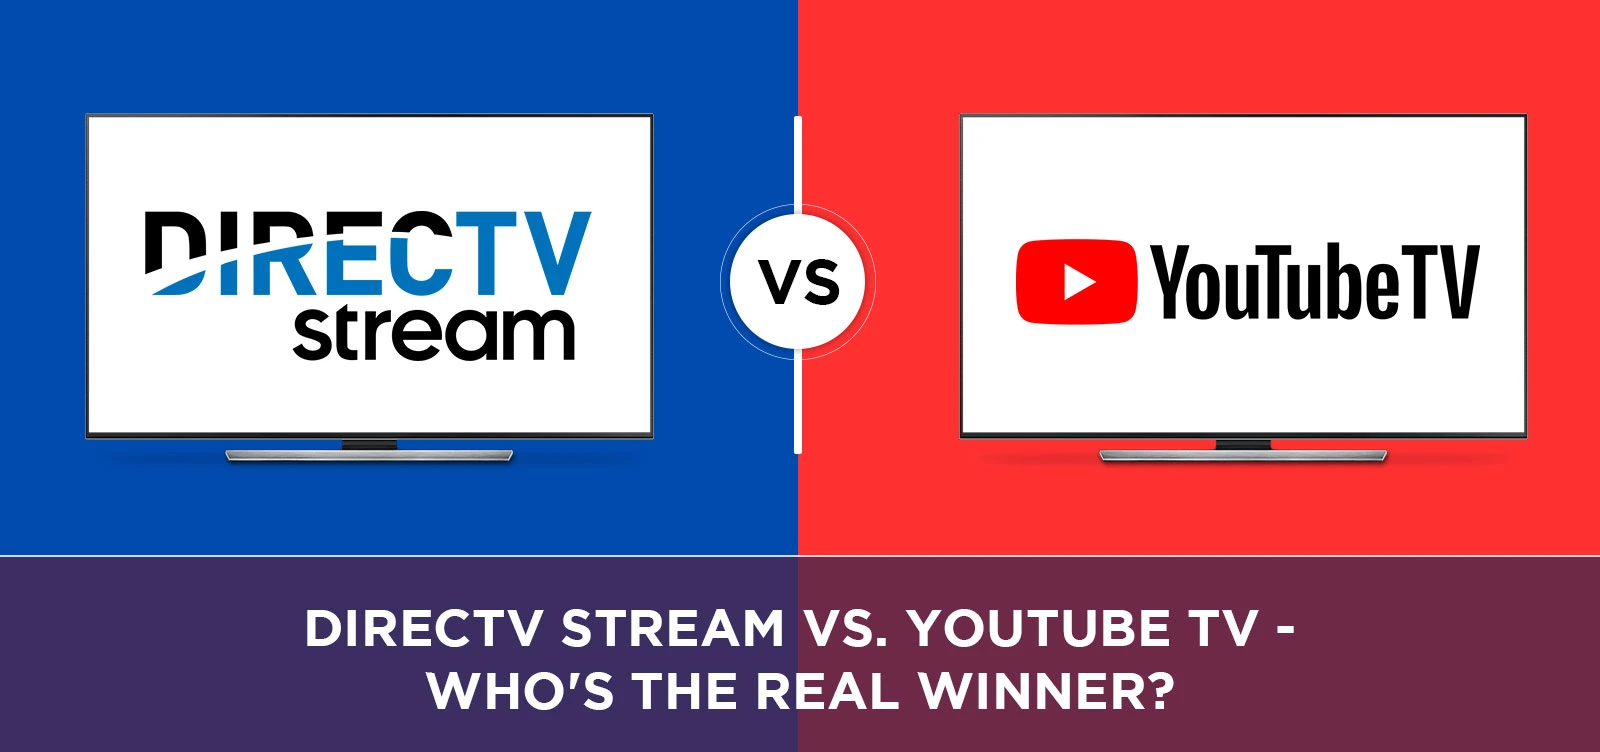 DIRECTV Stream vs. YouTube TV - Who's the Real Winner?